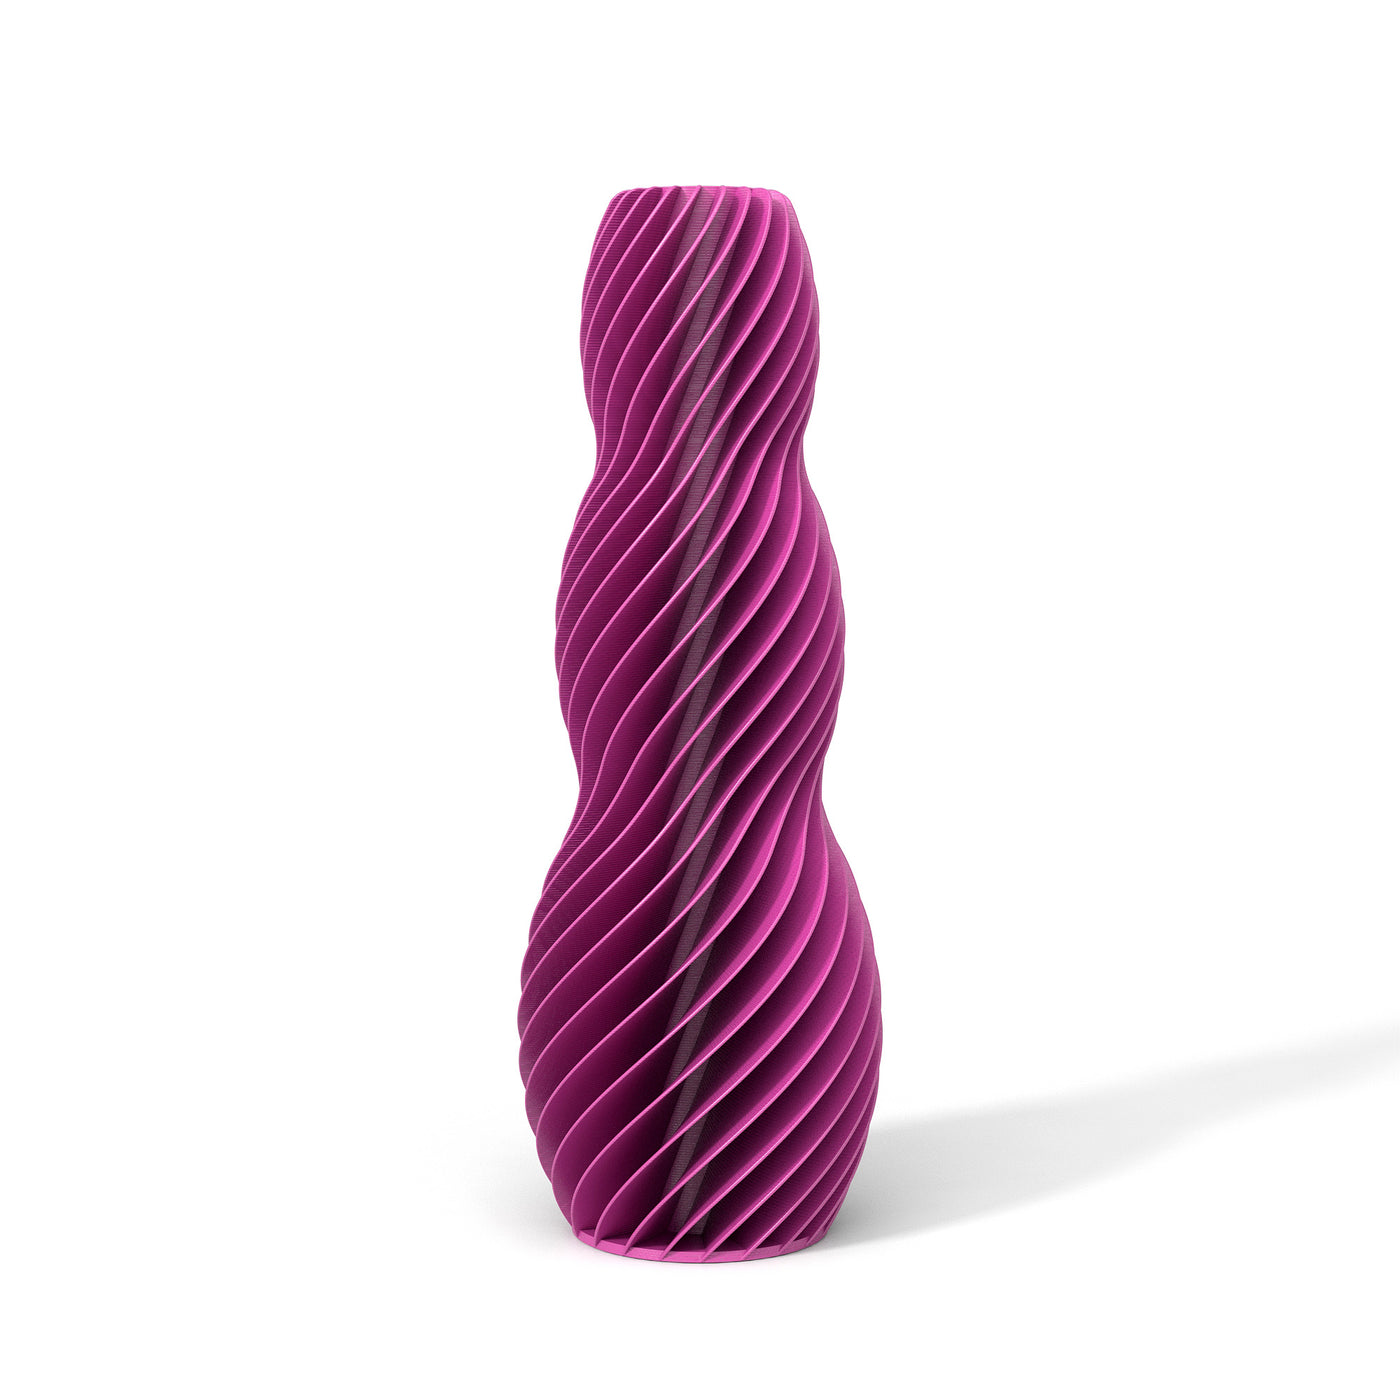 Růžová designová váza 3D print SPIRAL 3